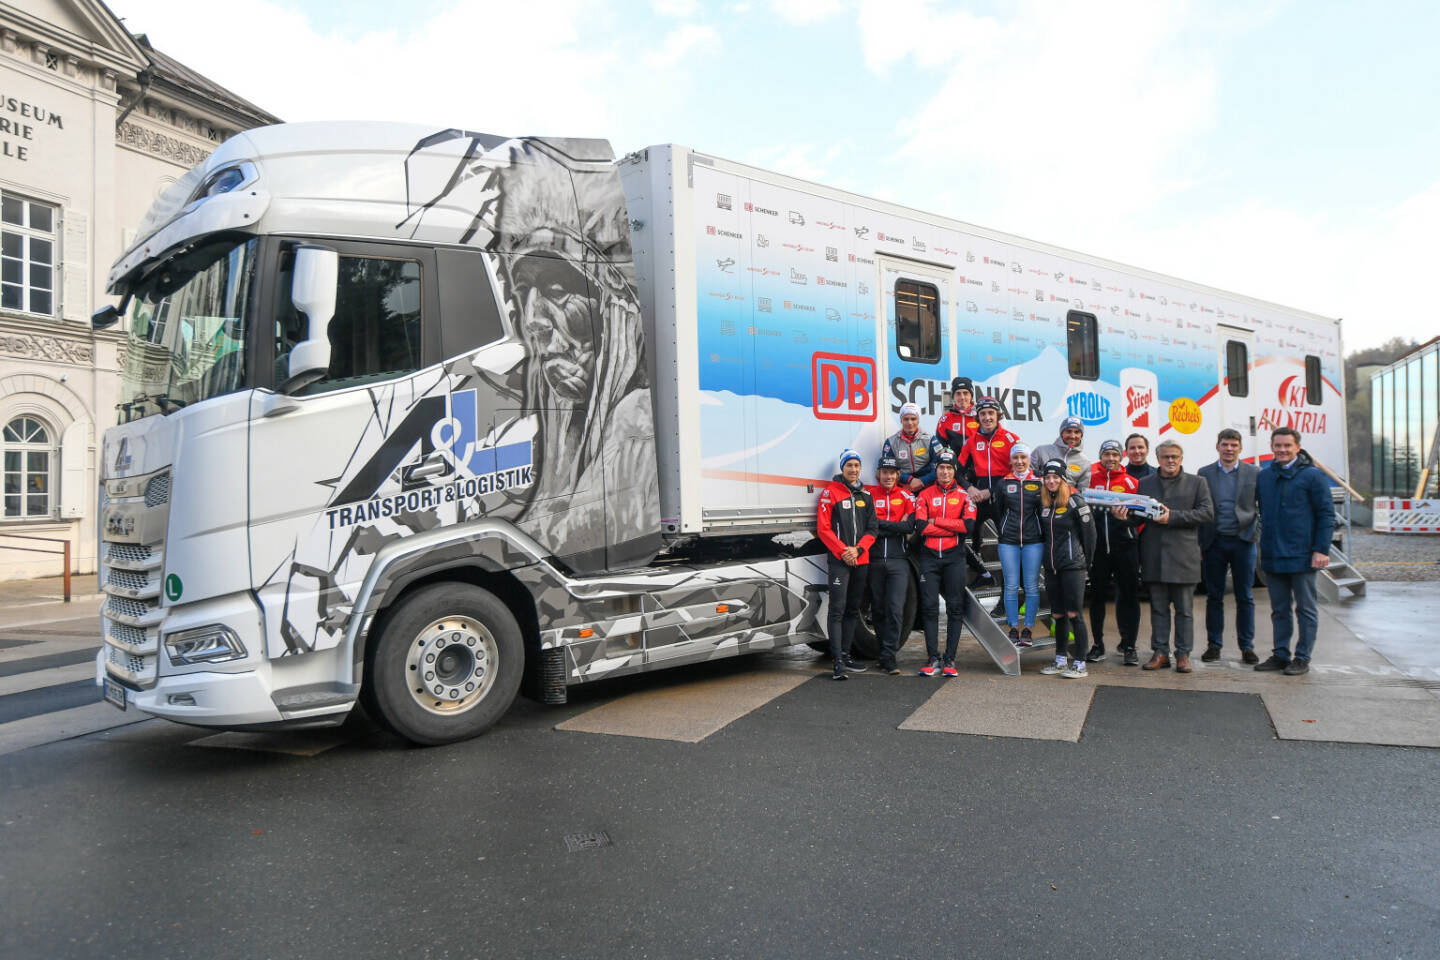 DB Schenker in Österreich: ÖSV und DB Schenker touren im neuen nordischen Truck zu allen europäischen Weltcupstationen, Fotocredit:Erich Spiess